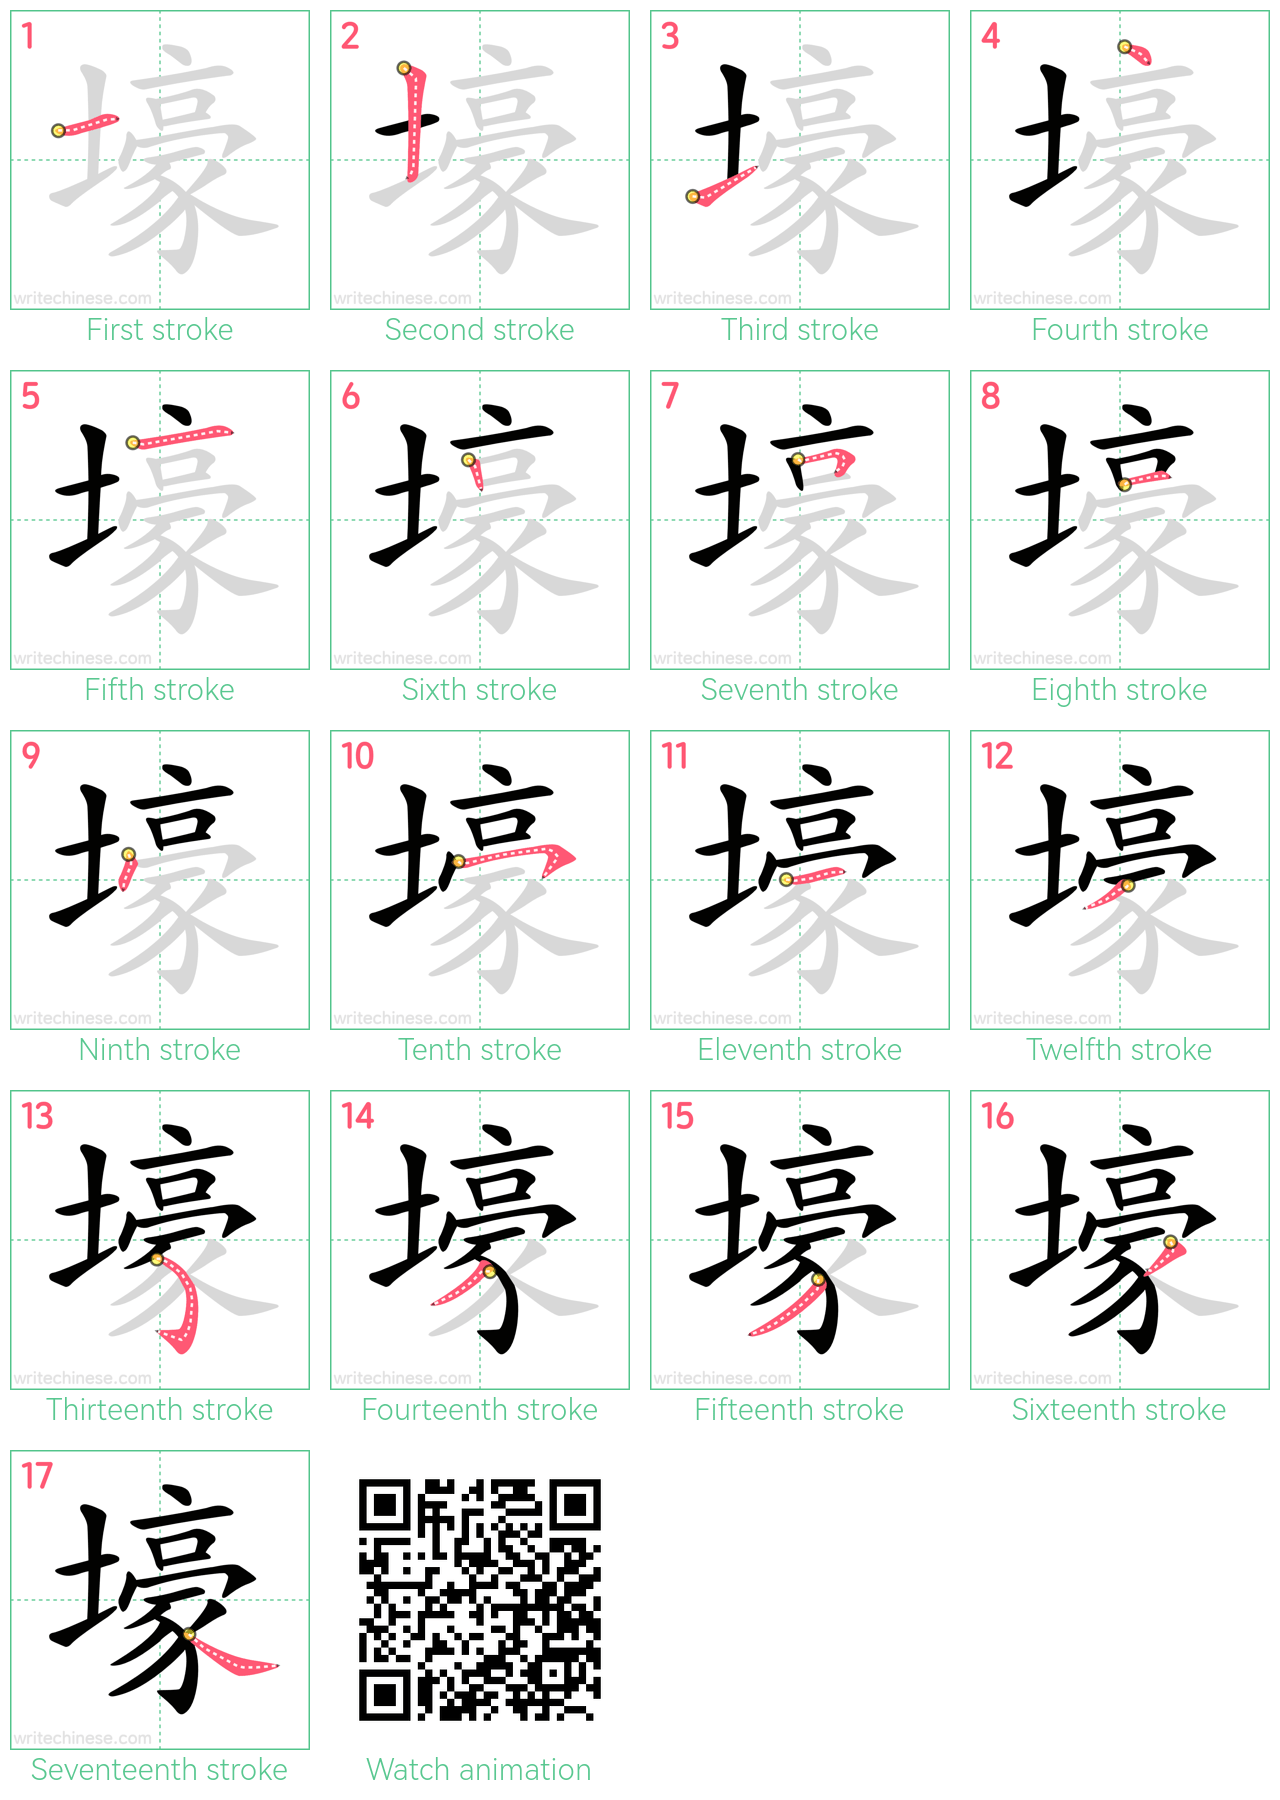 壕 step-by-step stroke order diagrams